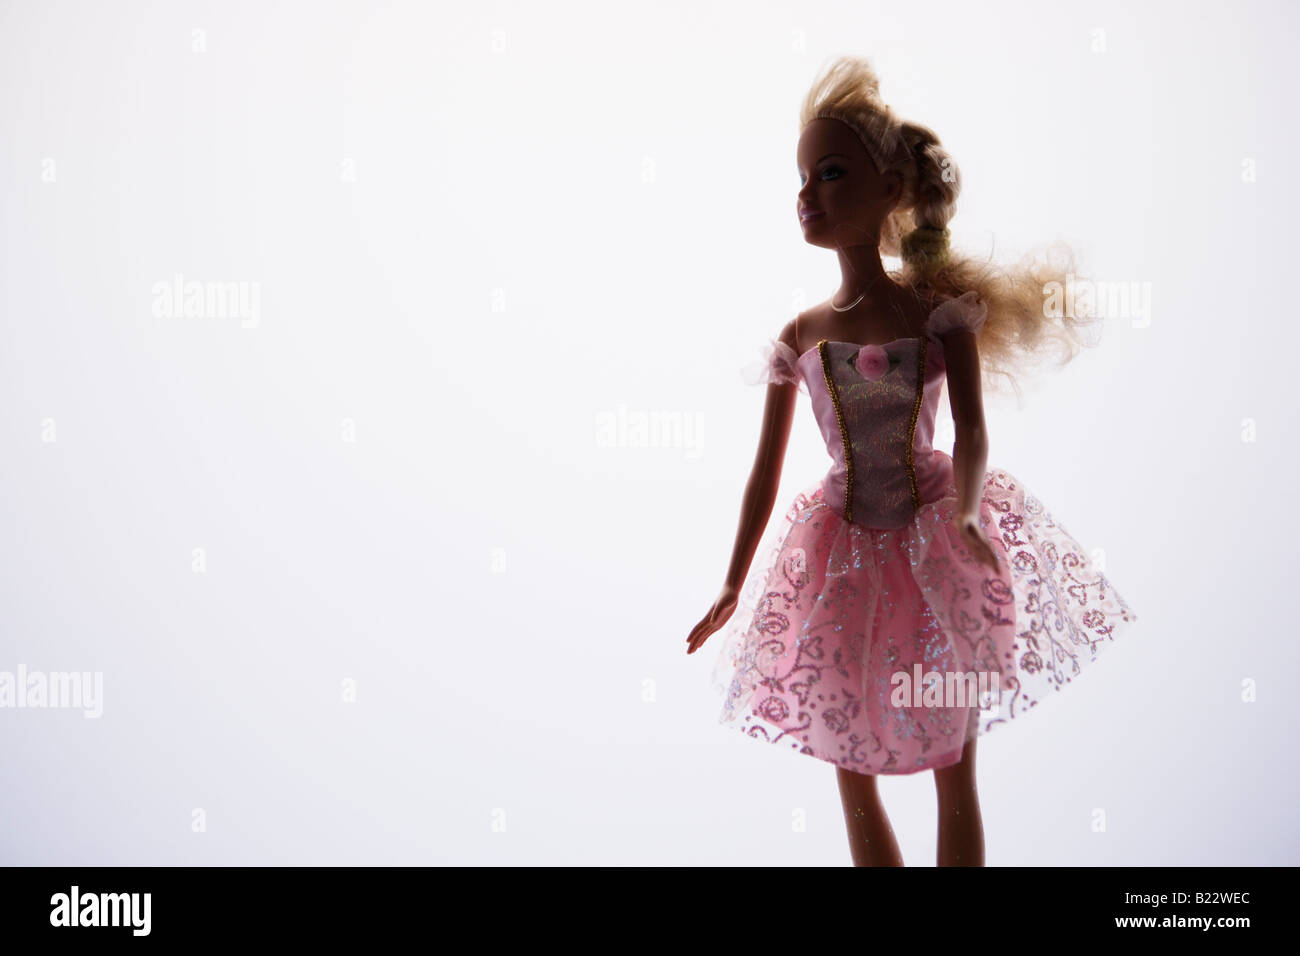 Bambola ballerina immagini e fotografie stock ad alta risoluzione - Alamy